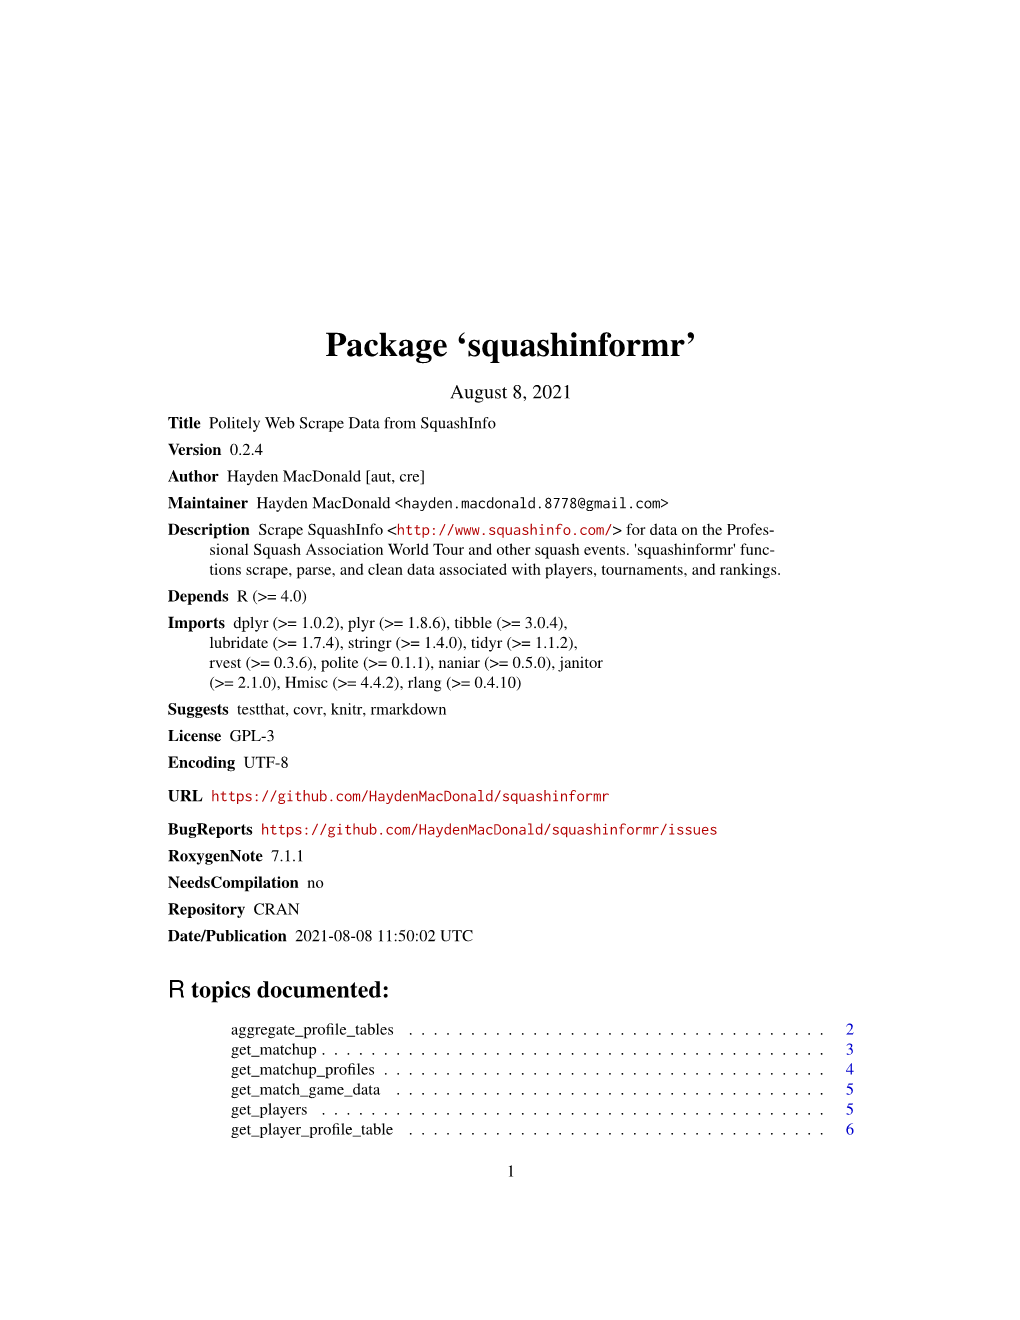 Squashinformr: Politely Web Scrape Data from Squashinfo